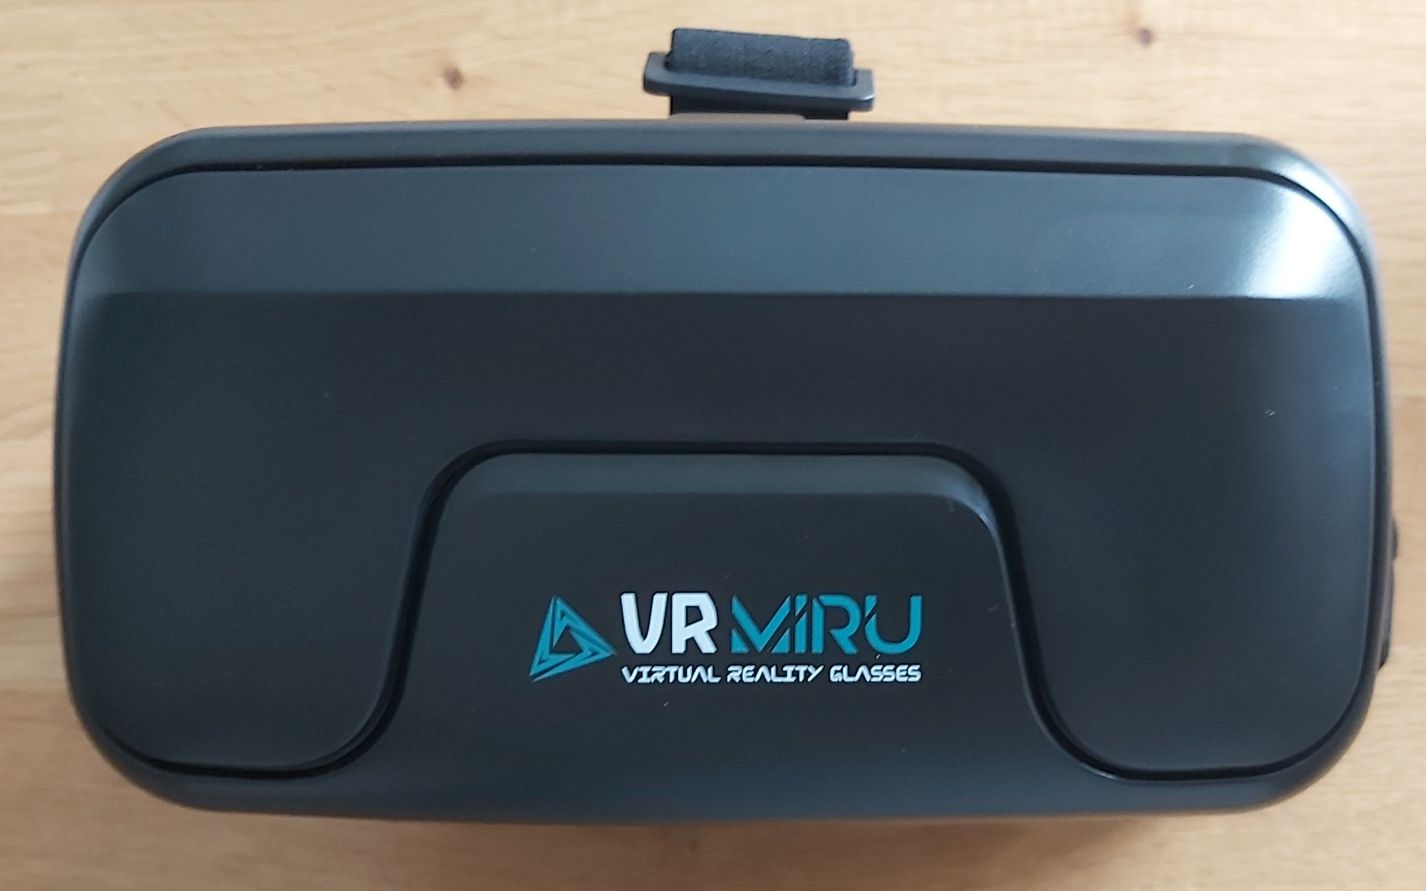 Oulary 3D VR Virtual Reality Glasses Miru VMR700J